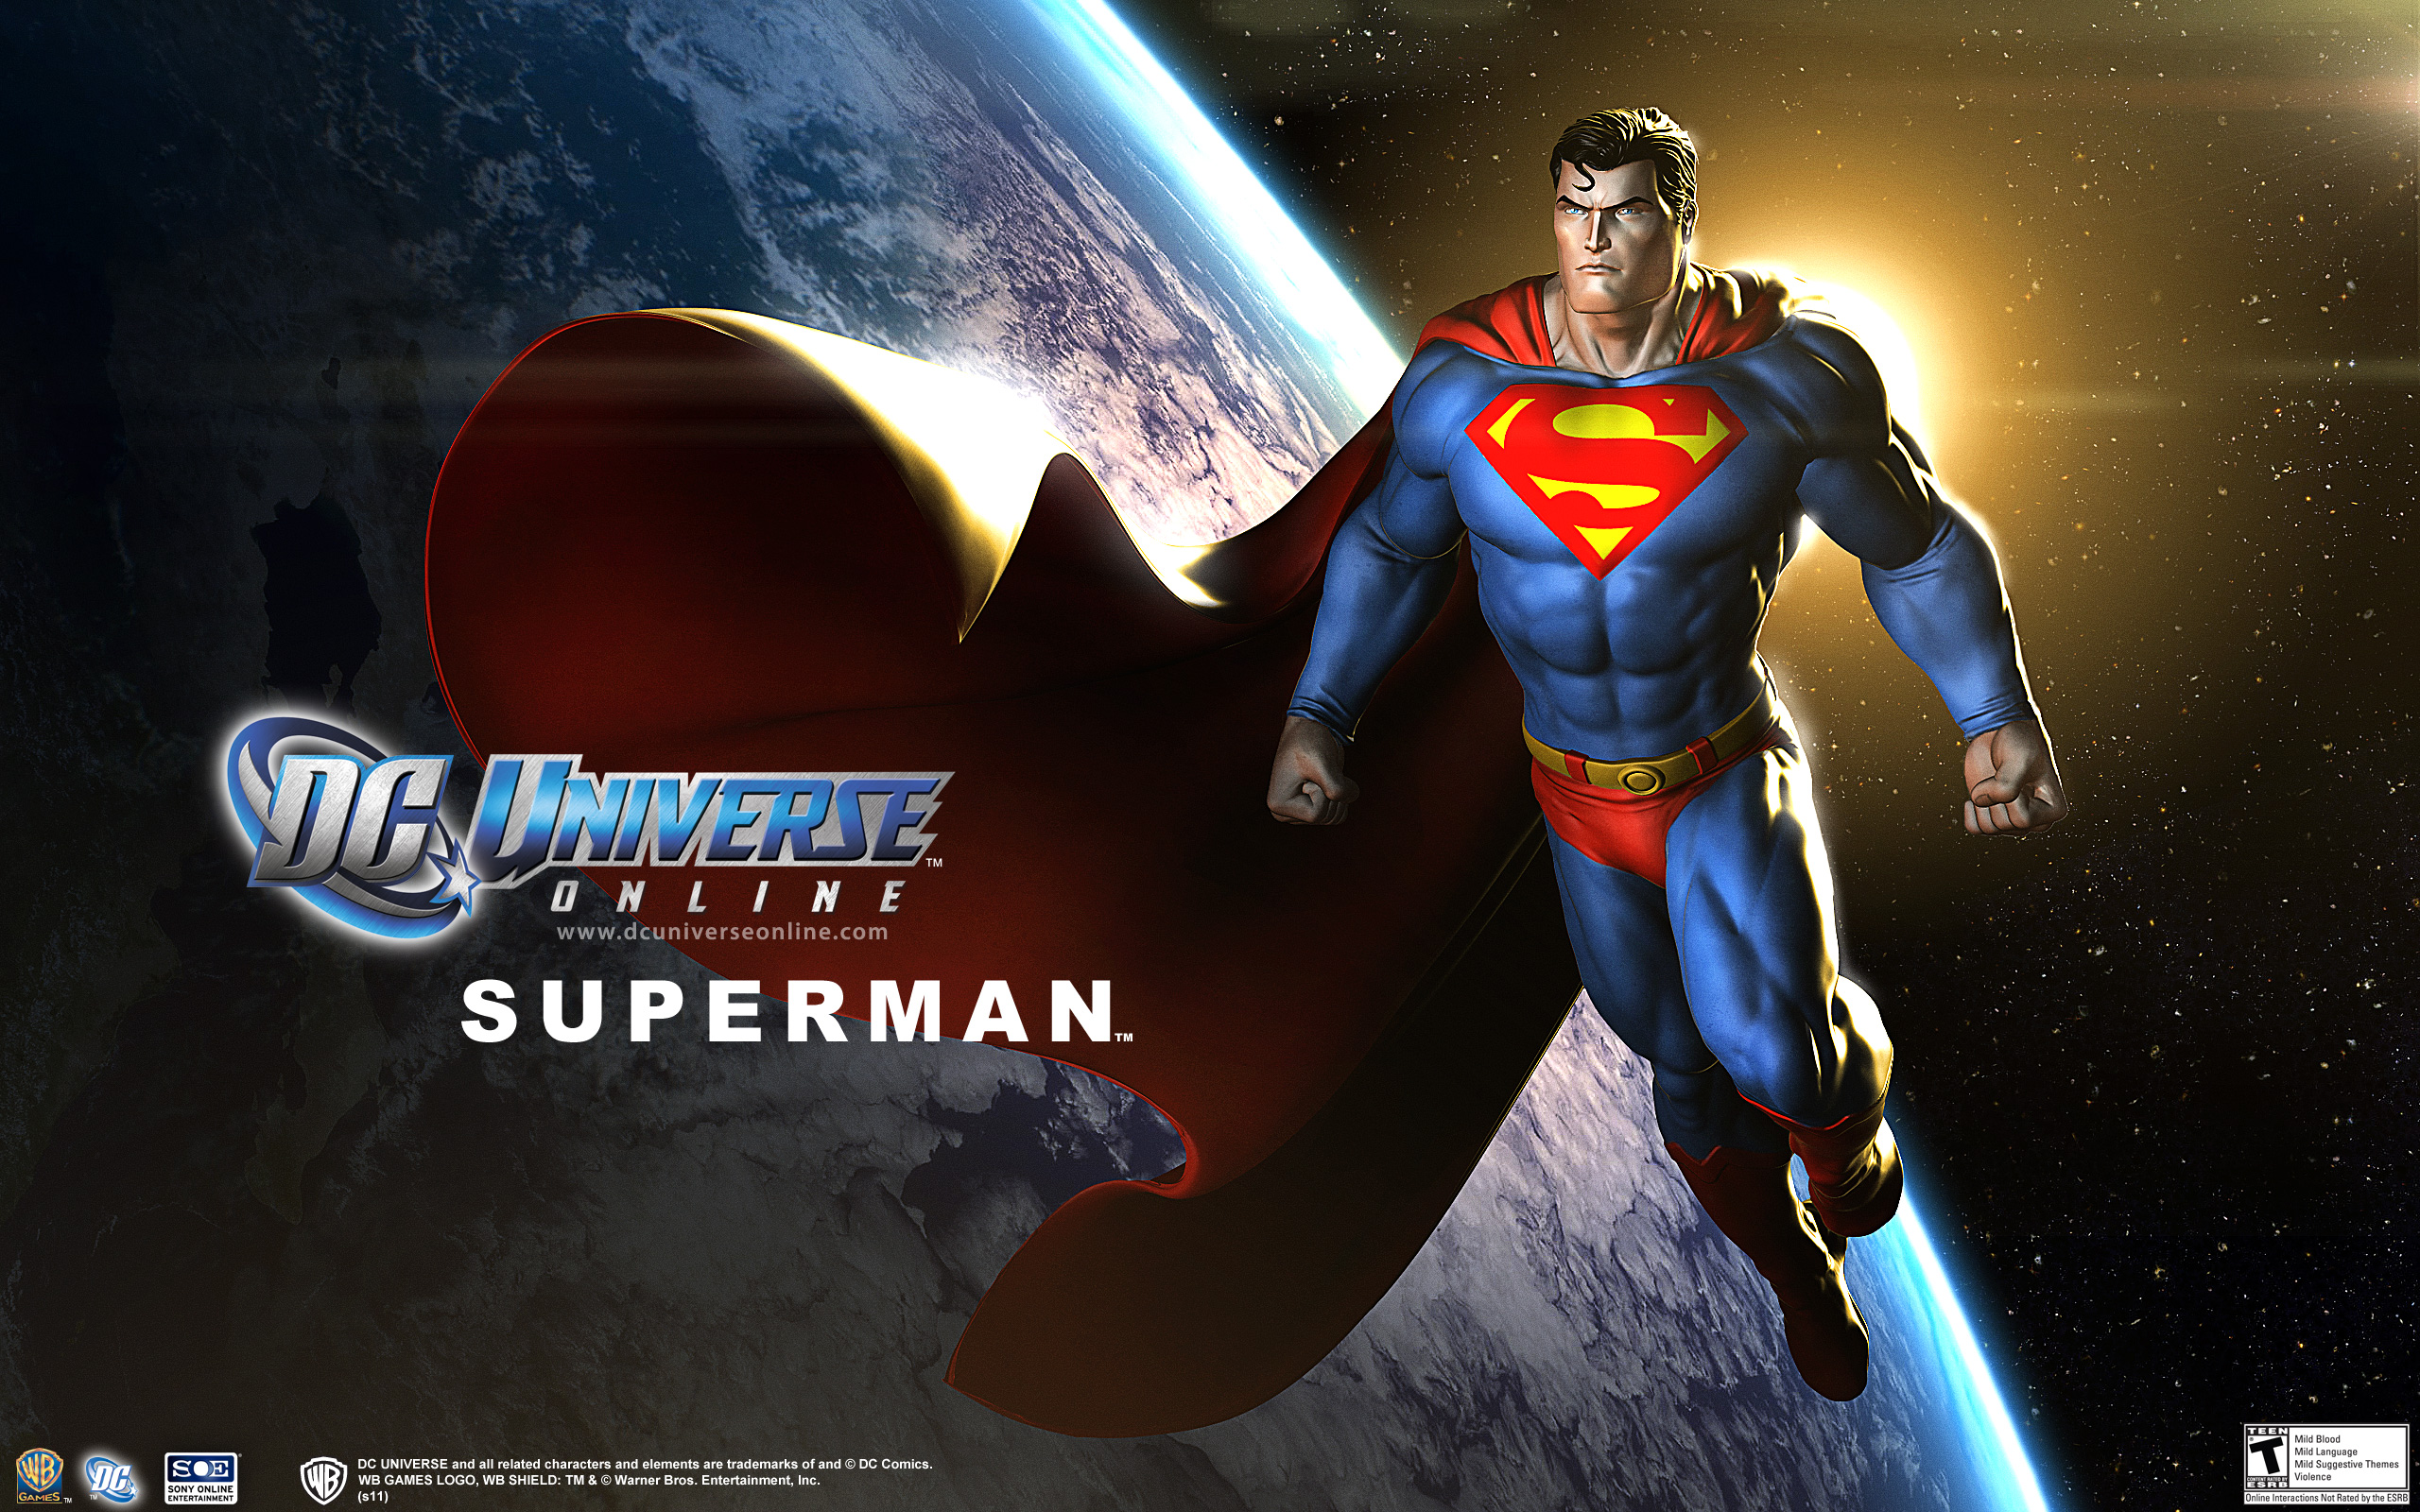 dc宇宙壁紙,スーパーヒーロー,スーパーマン,架空の人物,ヒーロー,アクションフィギュア